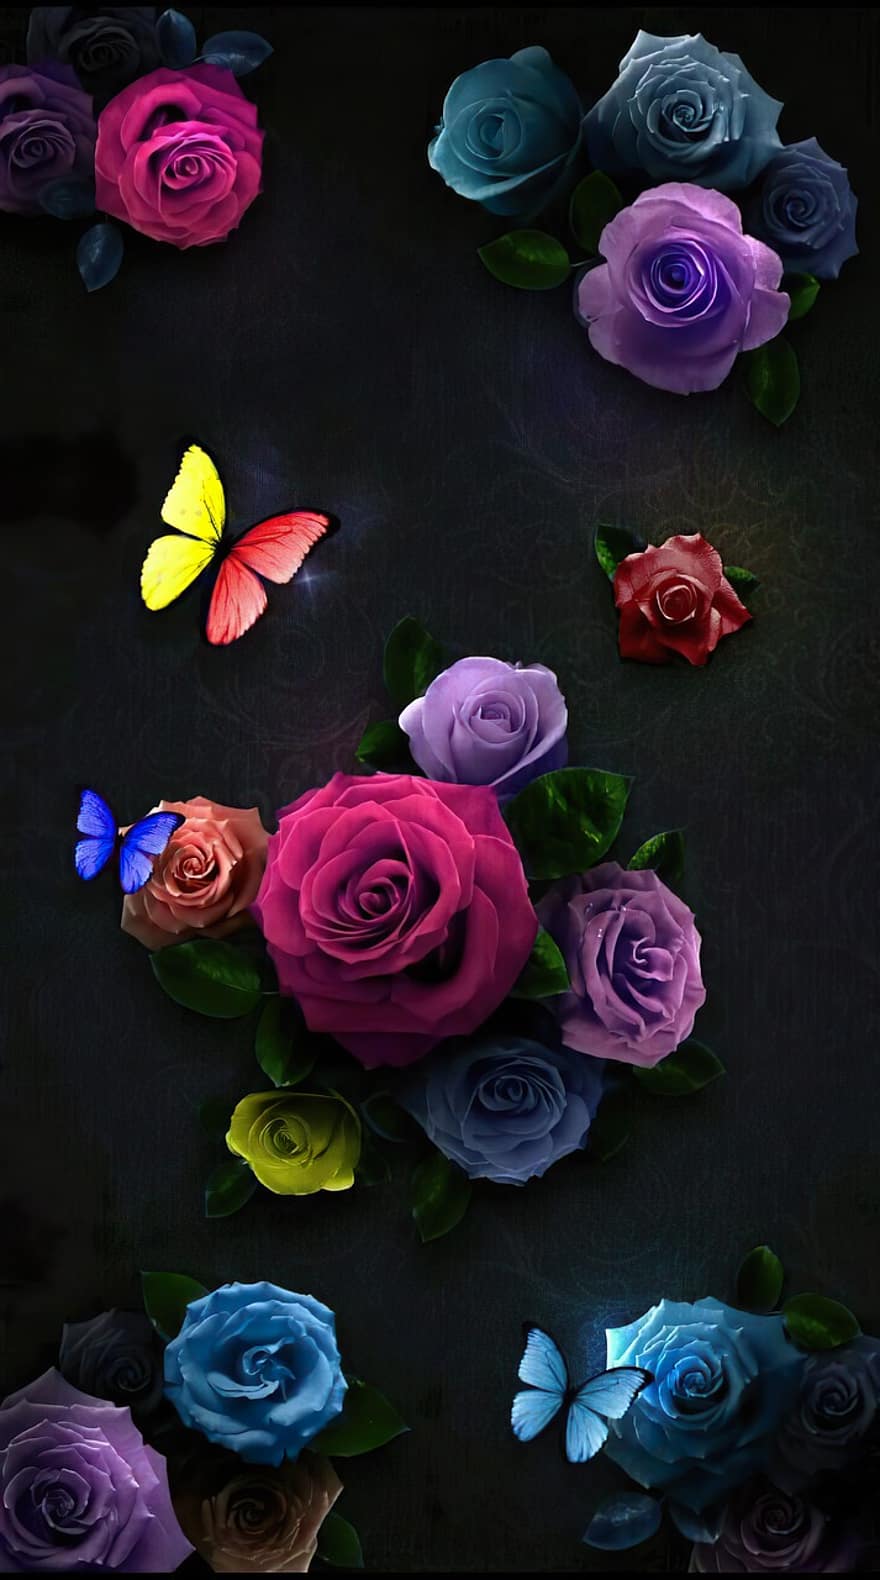 mawar, bunga-bunga, Latar Belakang, musim semi, cinta, pola, kupu-kupu, penuh warna, bunga, latar belakang, buket